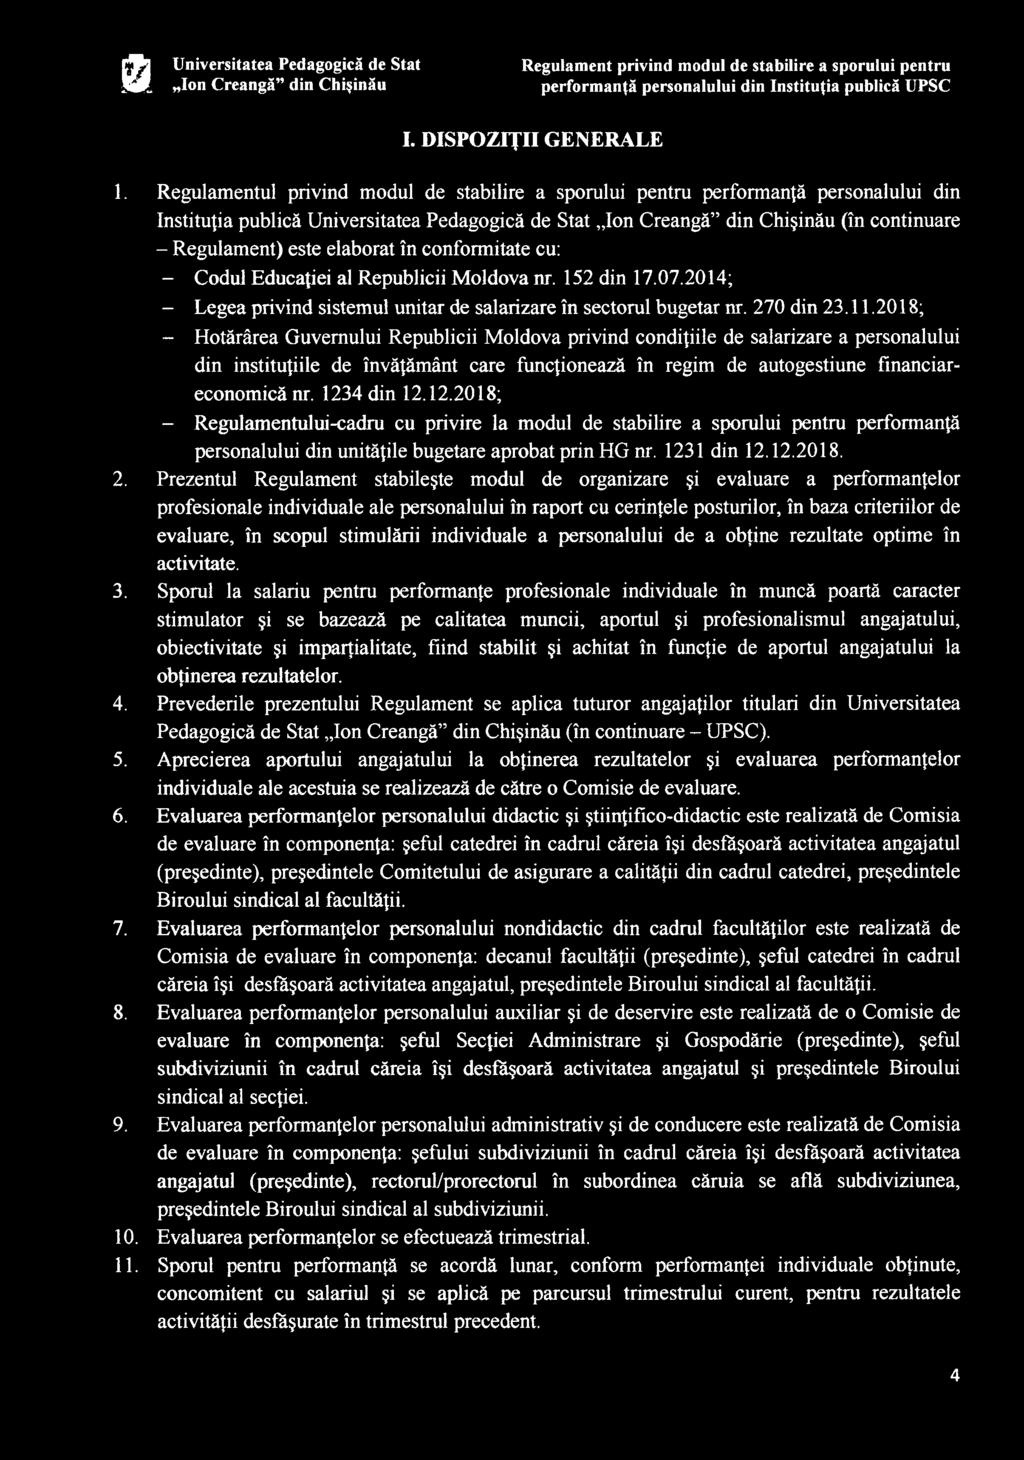 elaborat în conformitate cu: - Codul Educaţiei al Republicii Moldova nr. 152 din 17.07.2014; - Legea privind sistemul unitar de salarizare în sectorul bugetar nr. 270 din 23.11.